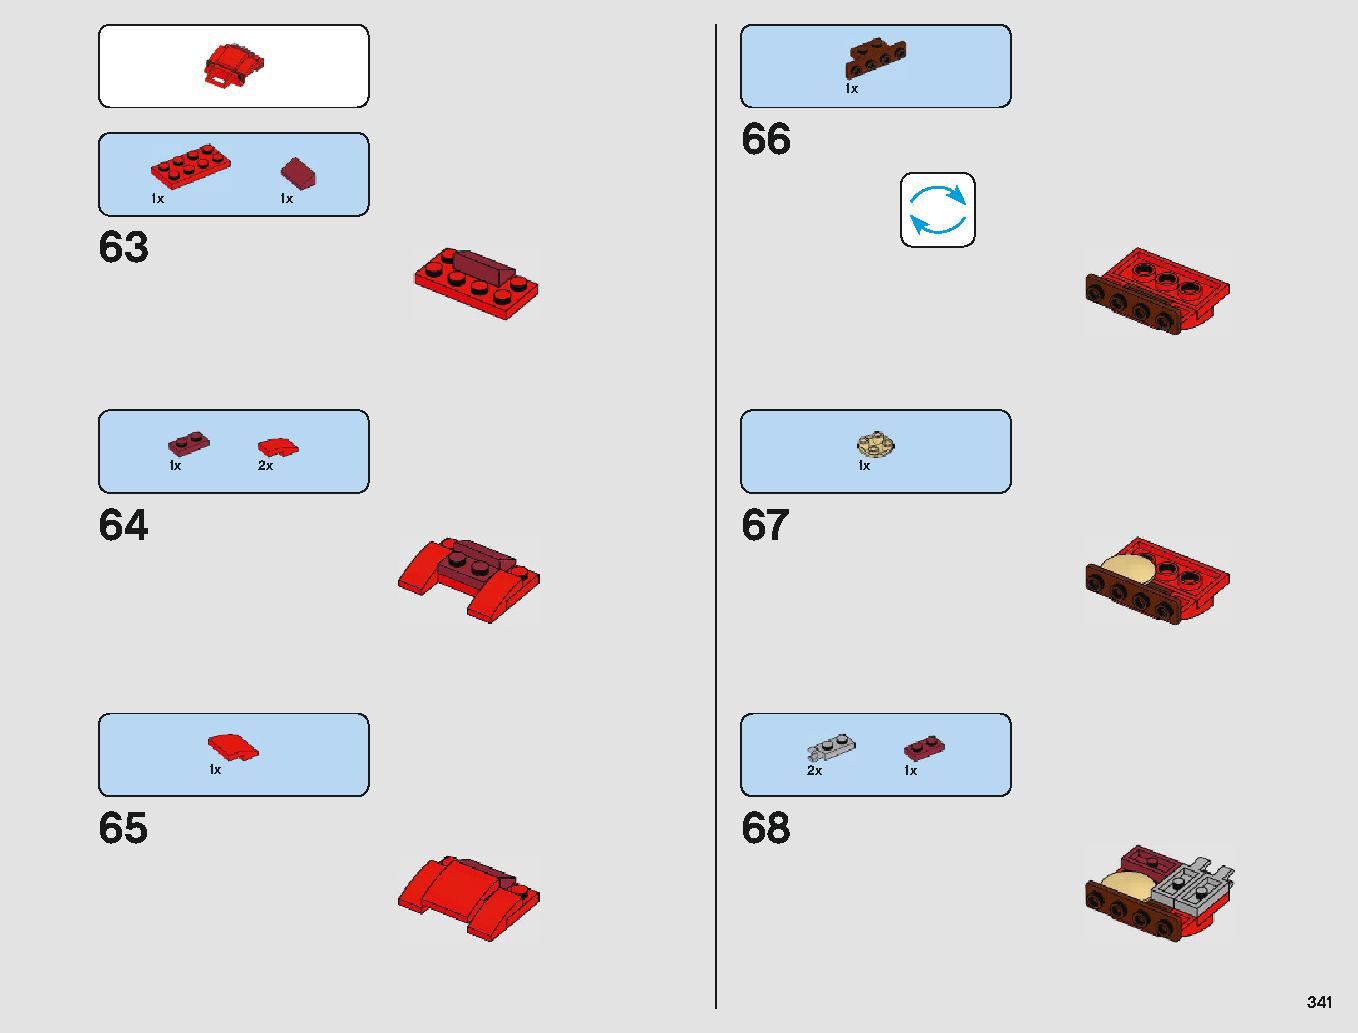 クラウド・シティ 75222 レゴの商品情報 レゴの説明書・組立方法 341 page